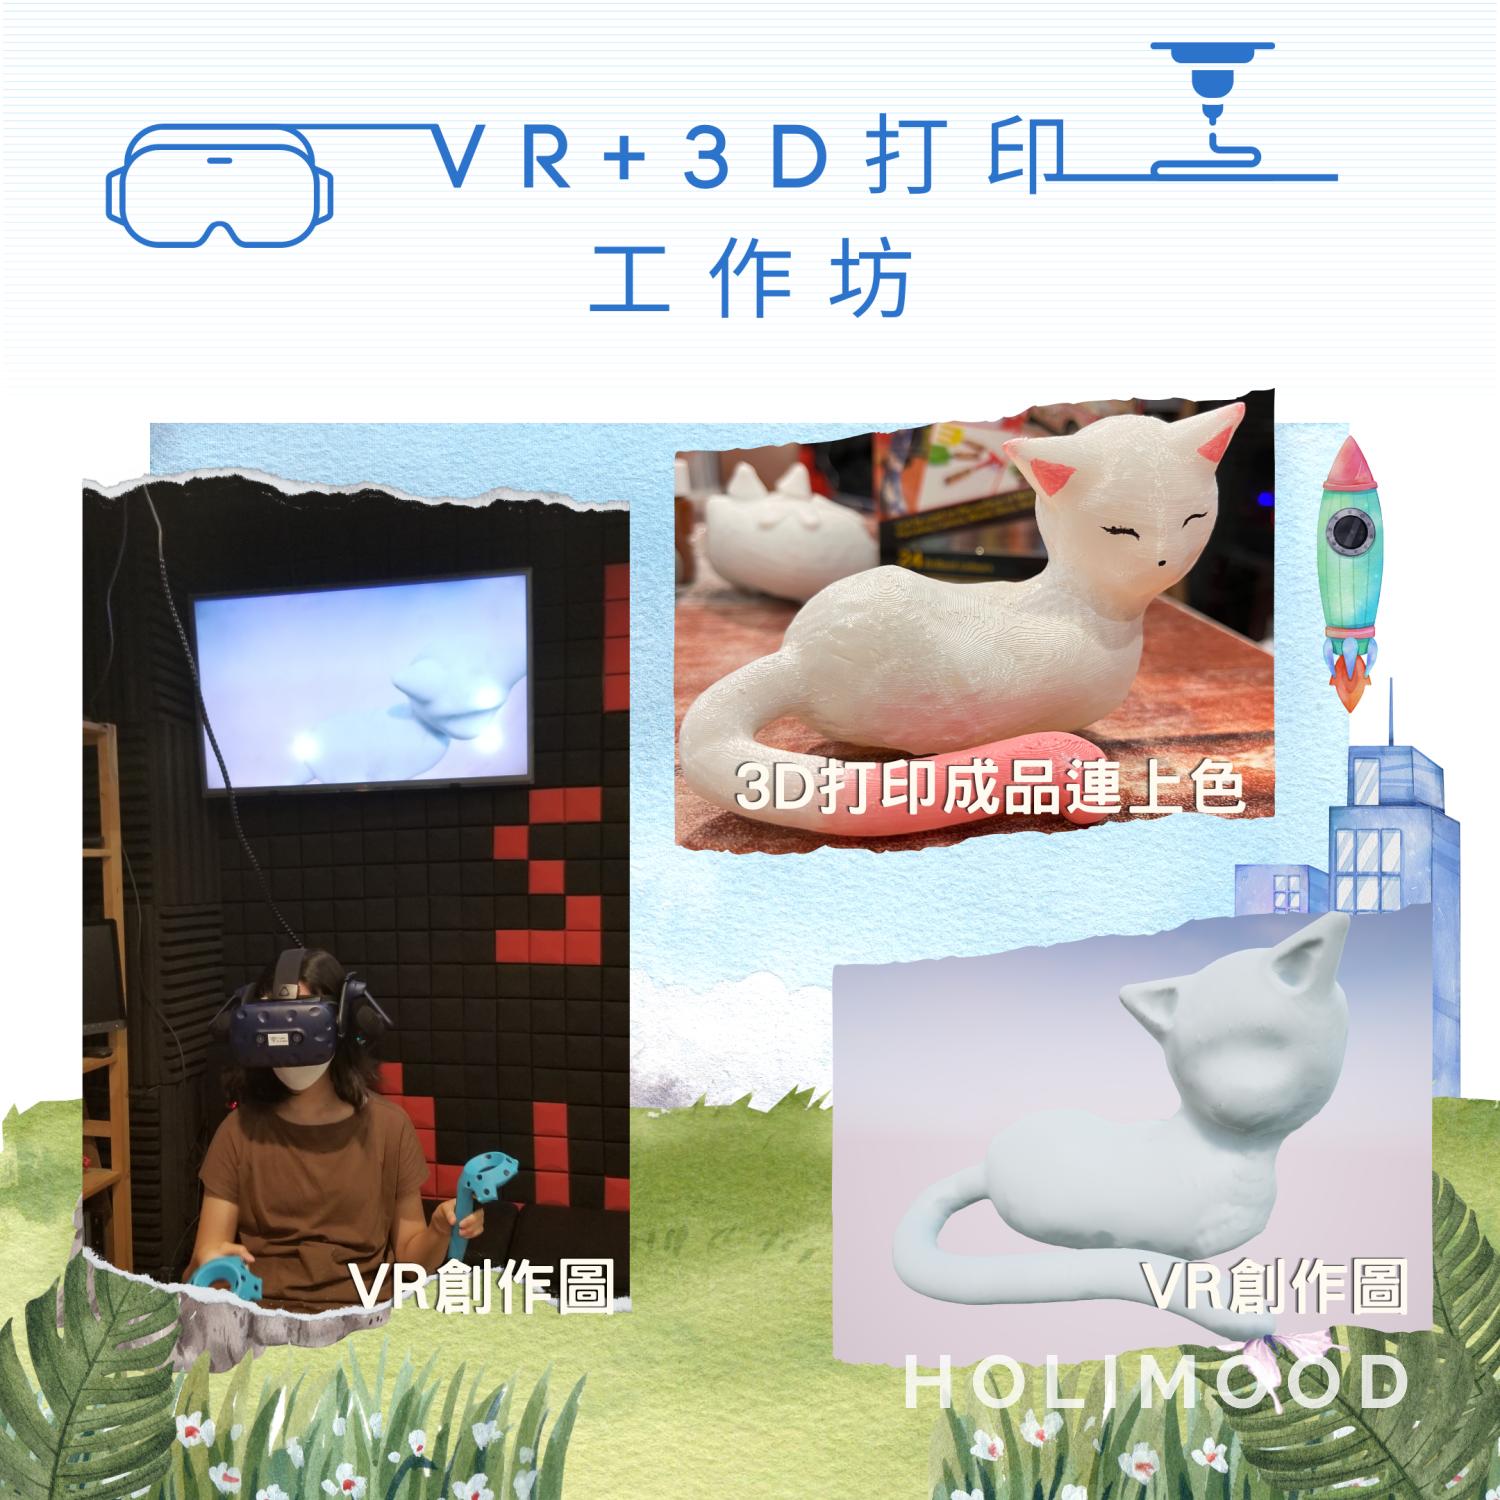 V-Owl Station VR Party VR+3D打印工作坊 8